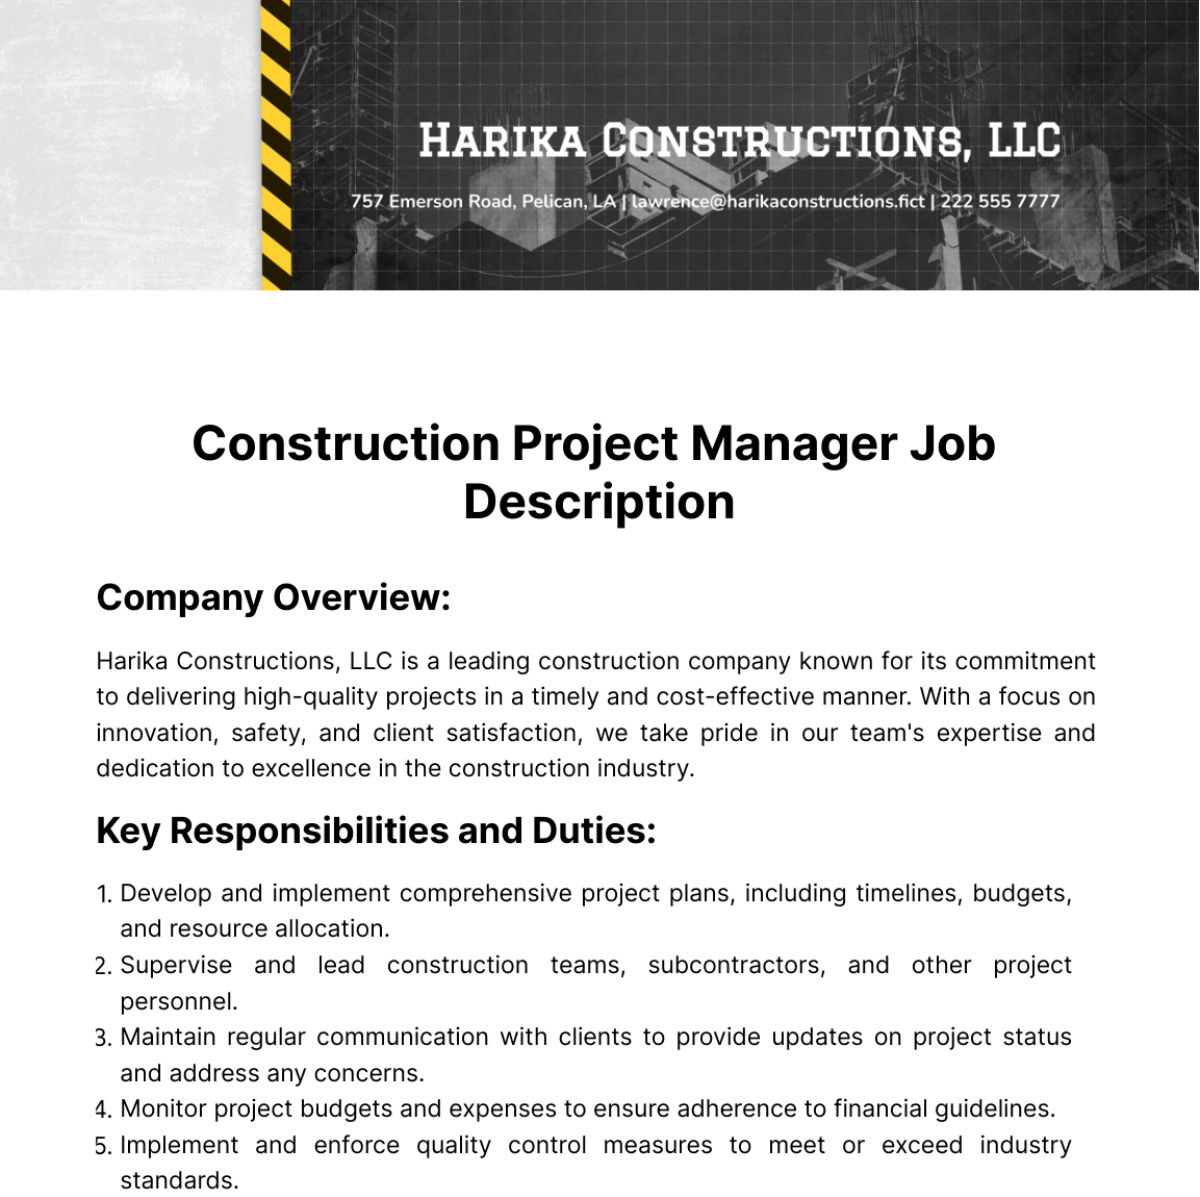 Construction Project Manager Job Description Template